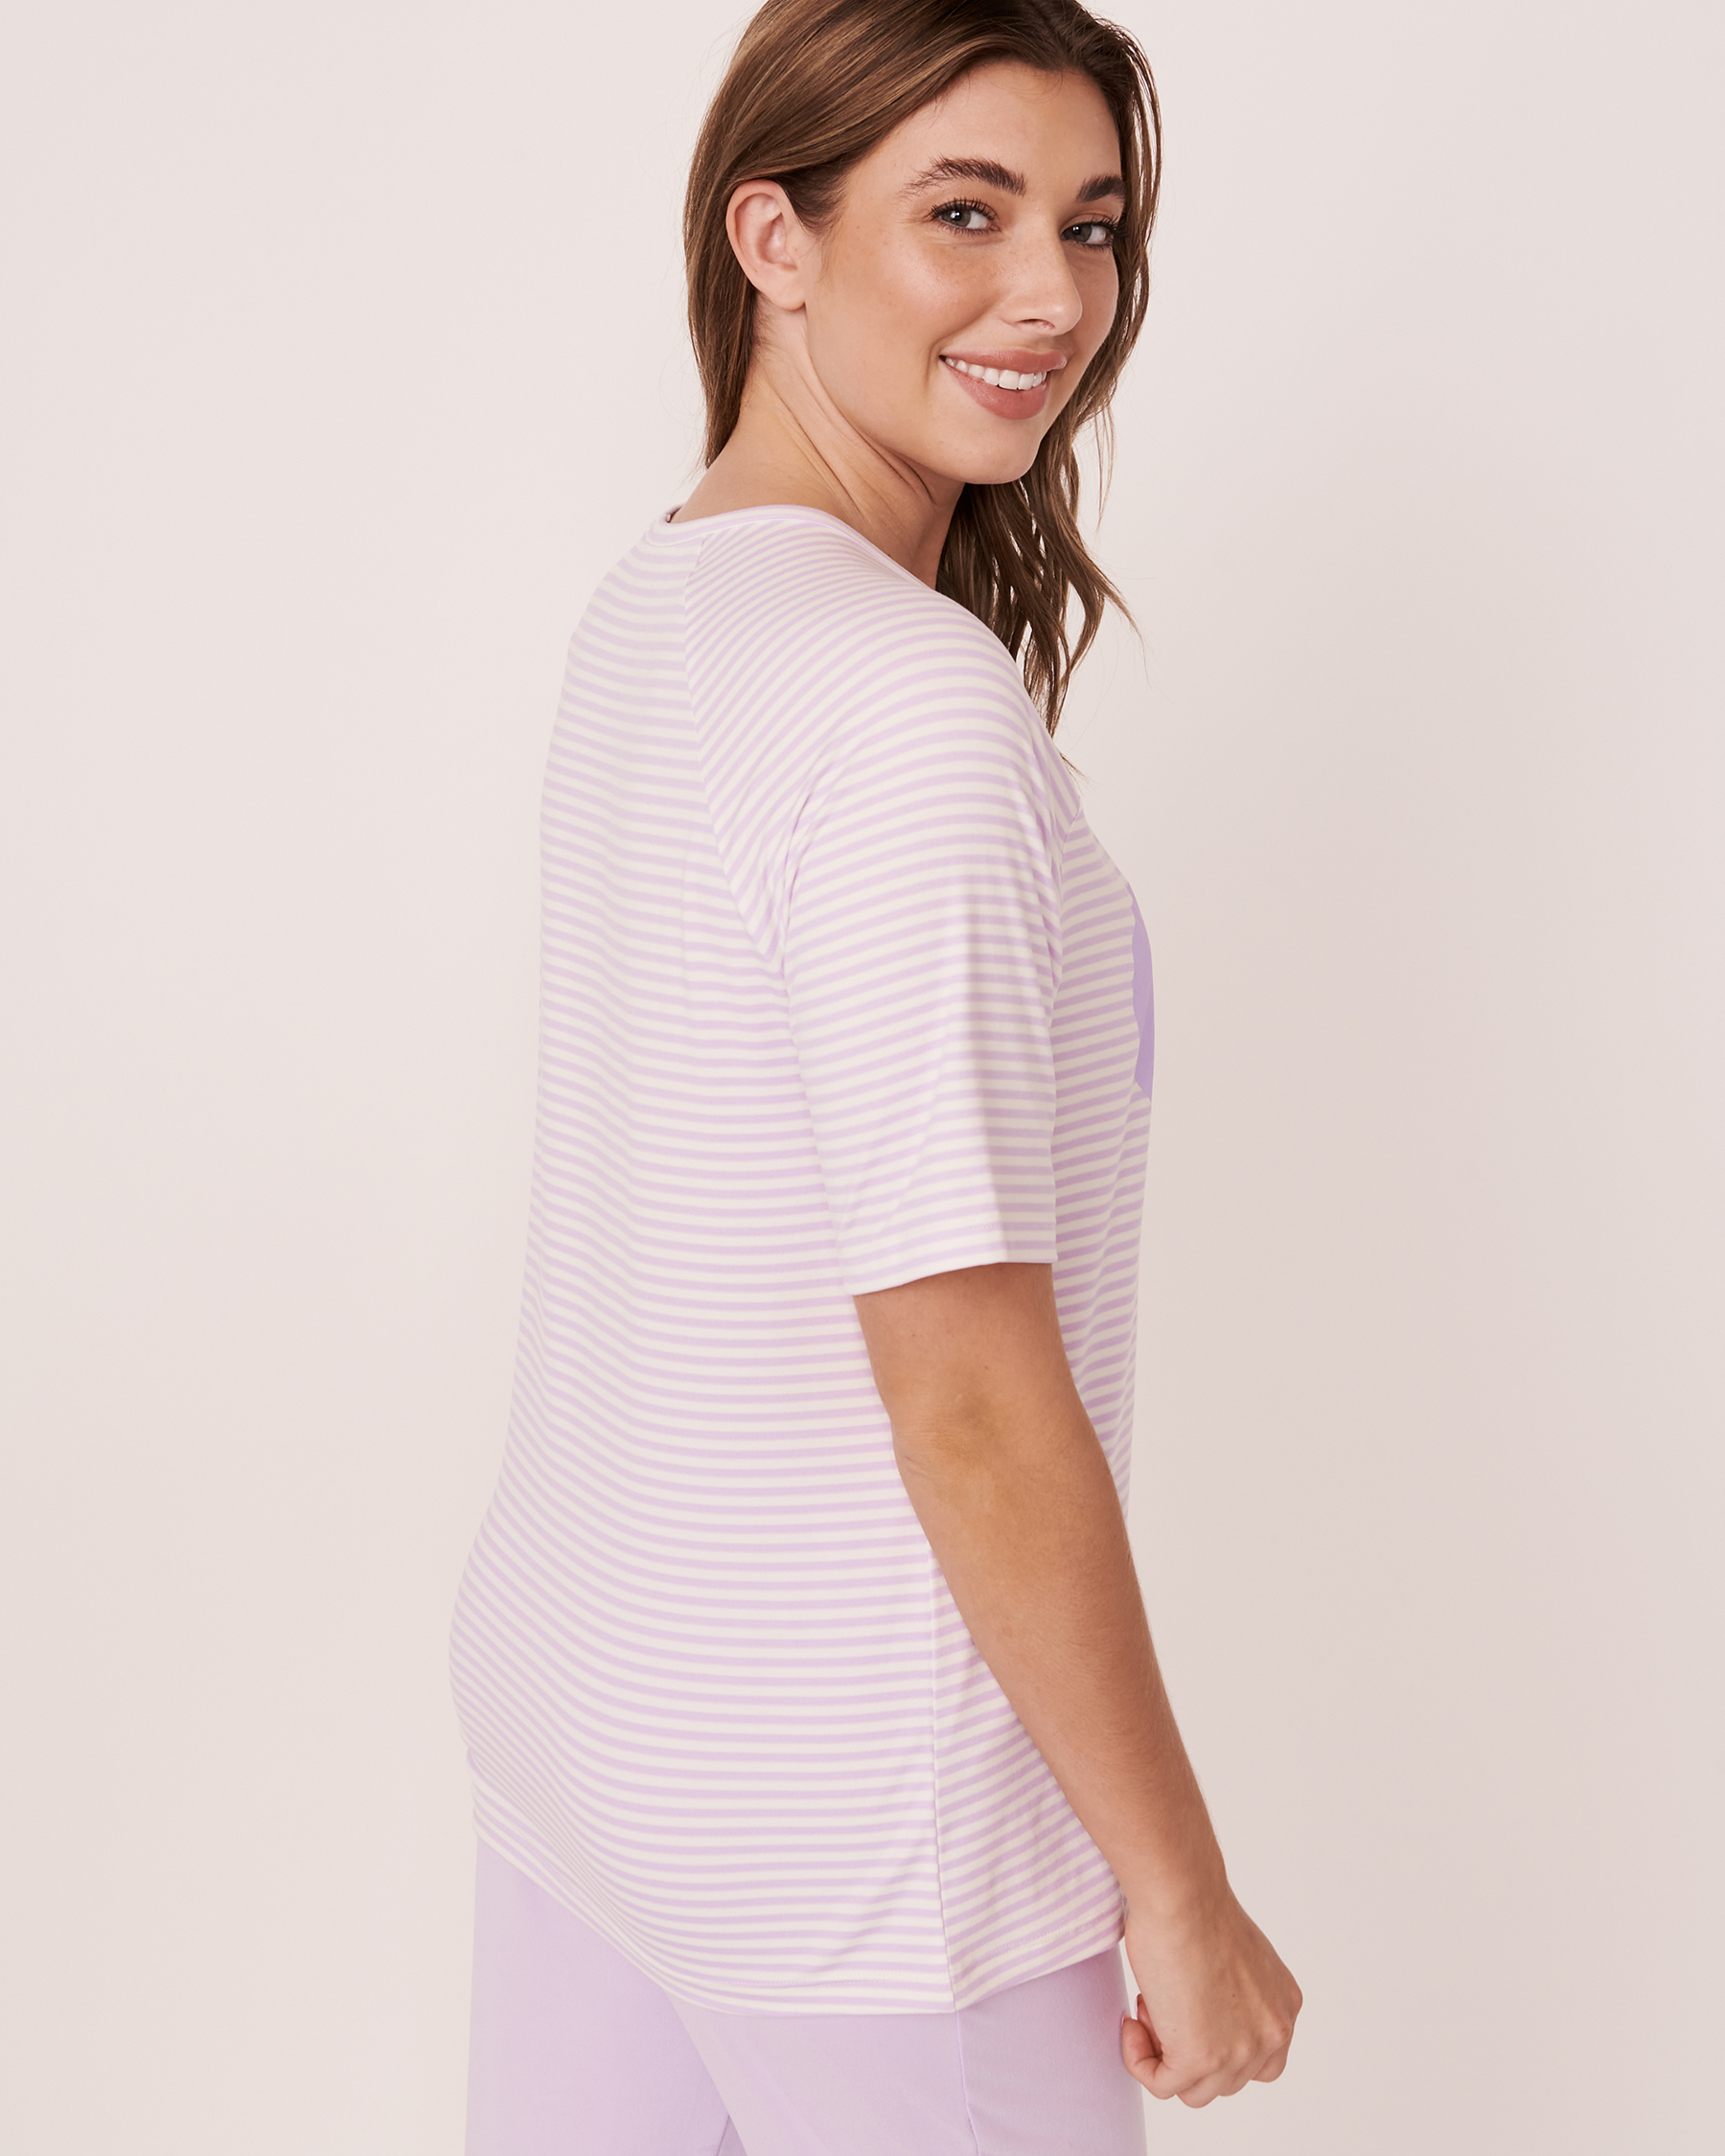 LA VIE EN ROSE Super Soft Raglan T-shirt Lilac stripes 40100211 - View2